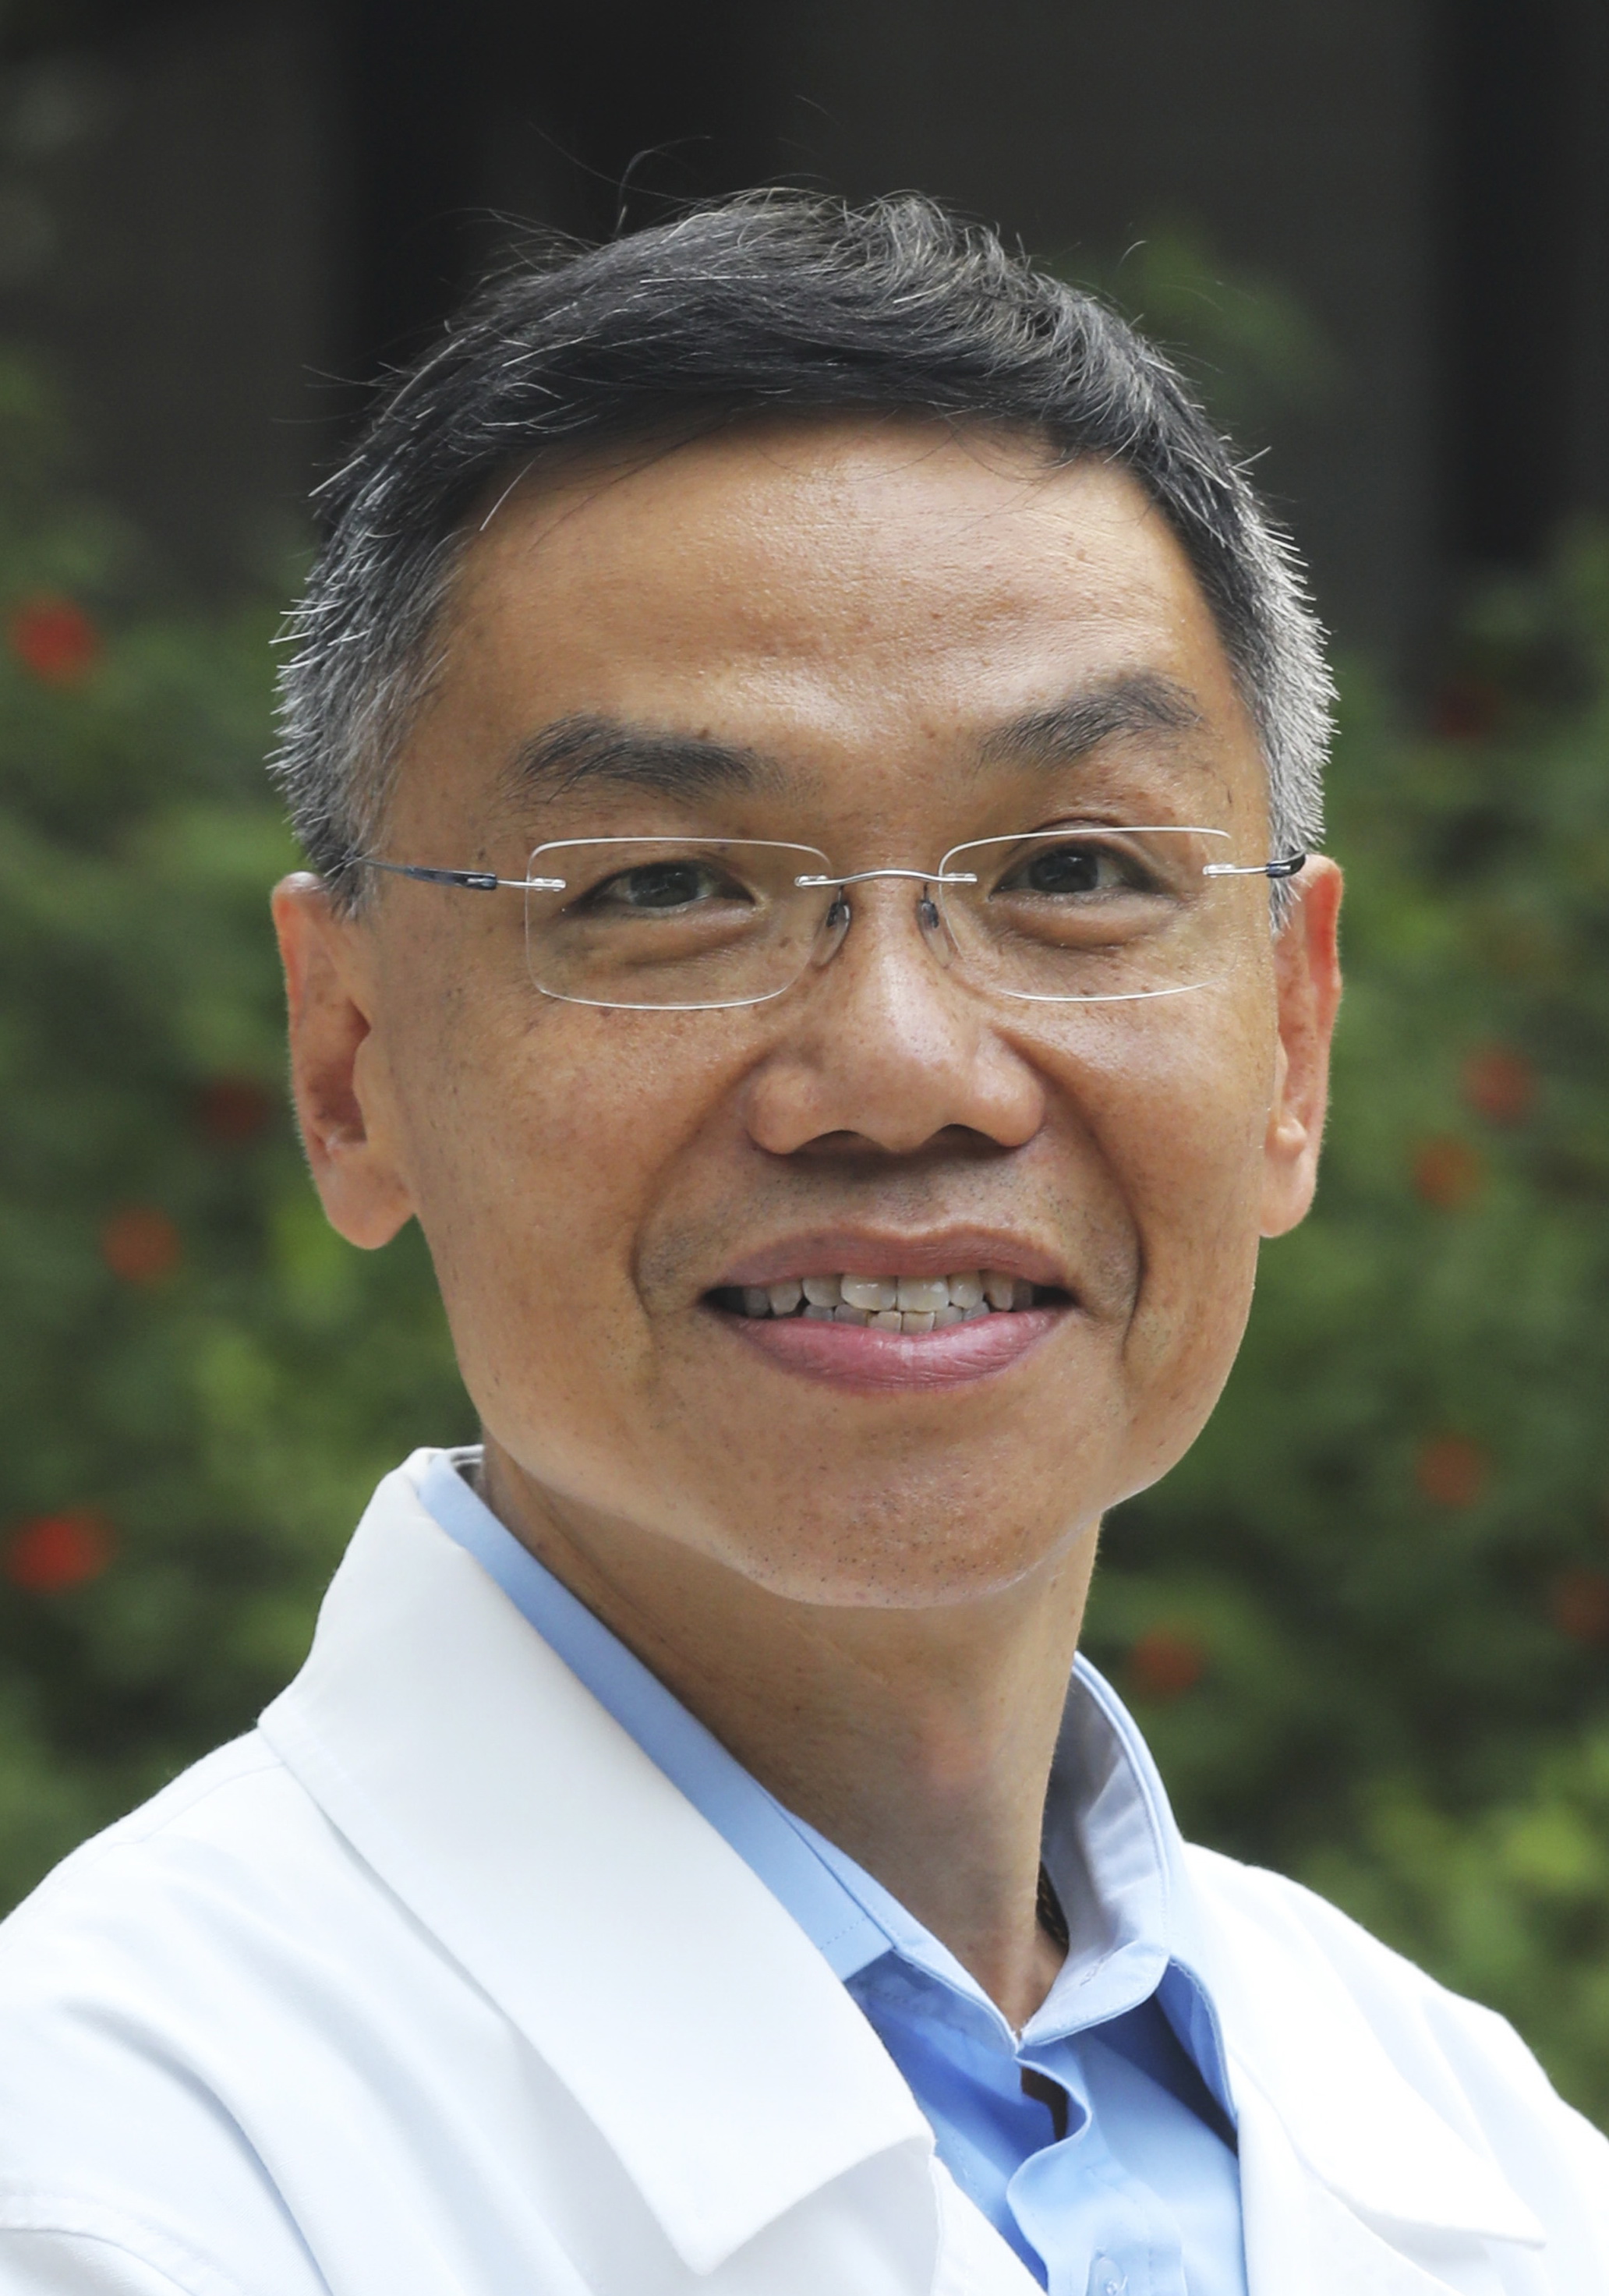 Dr Vincent Chi Hang LUI